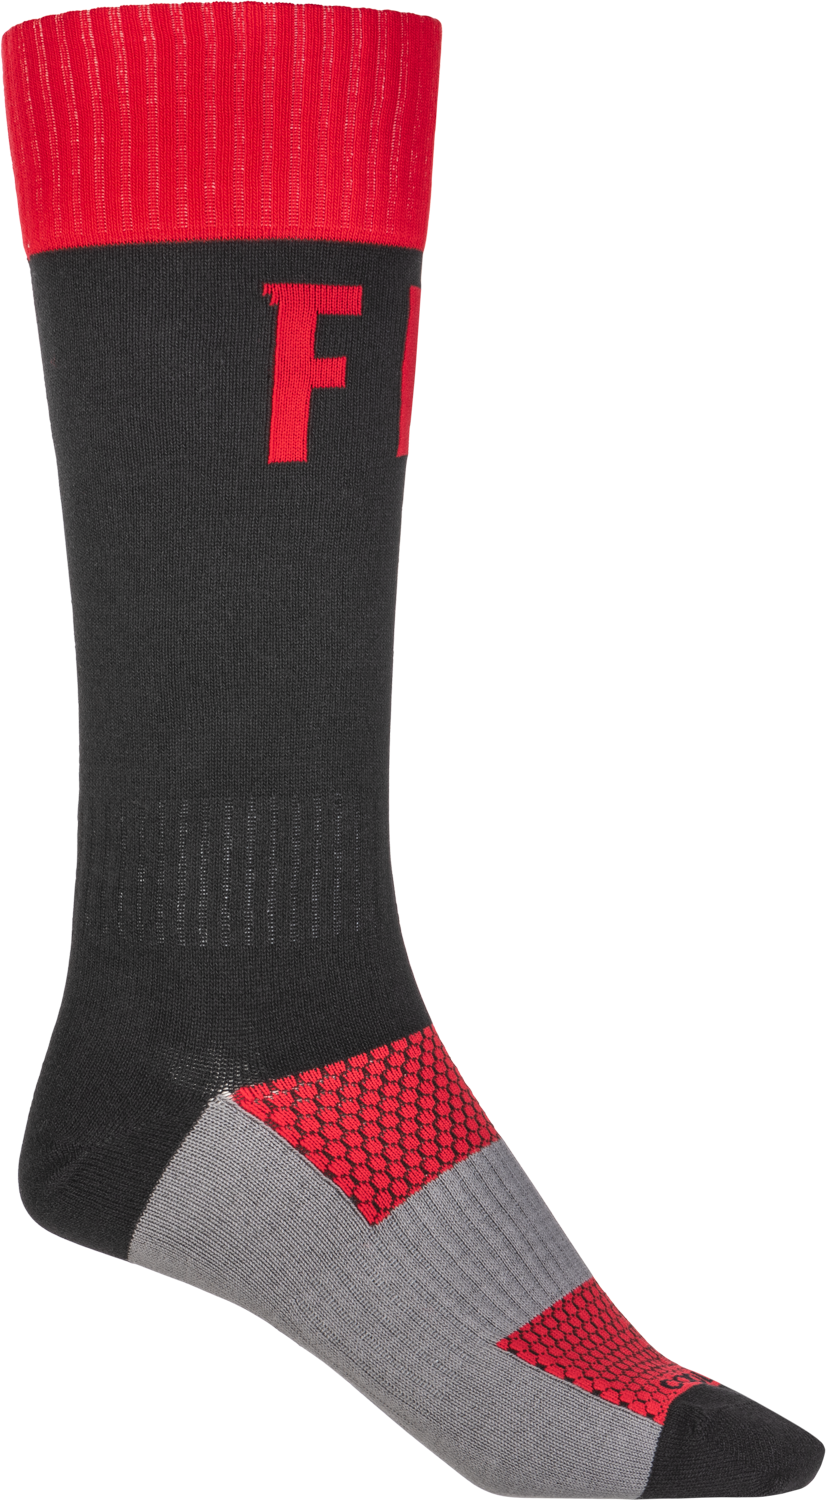 FLY RACING Mx Pro Socks Red/Black Lg/Xl 350-0532L